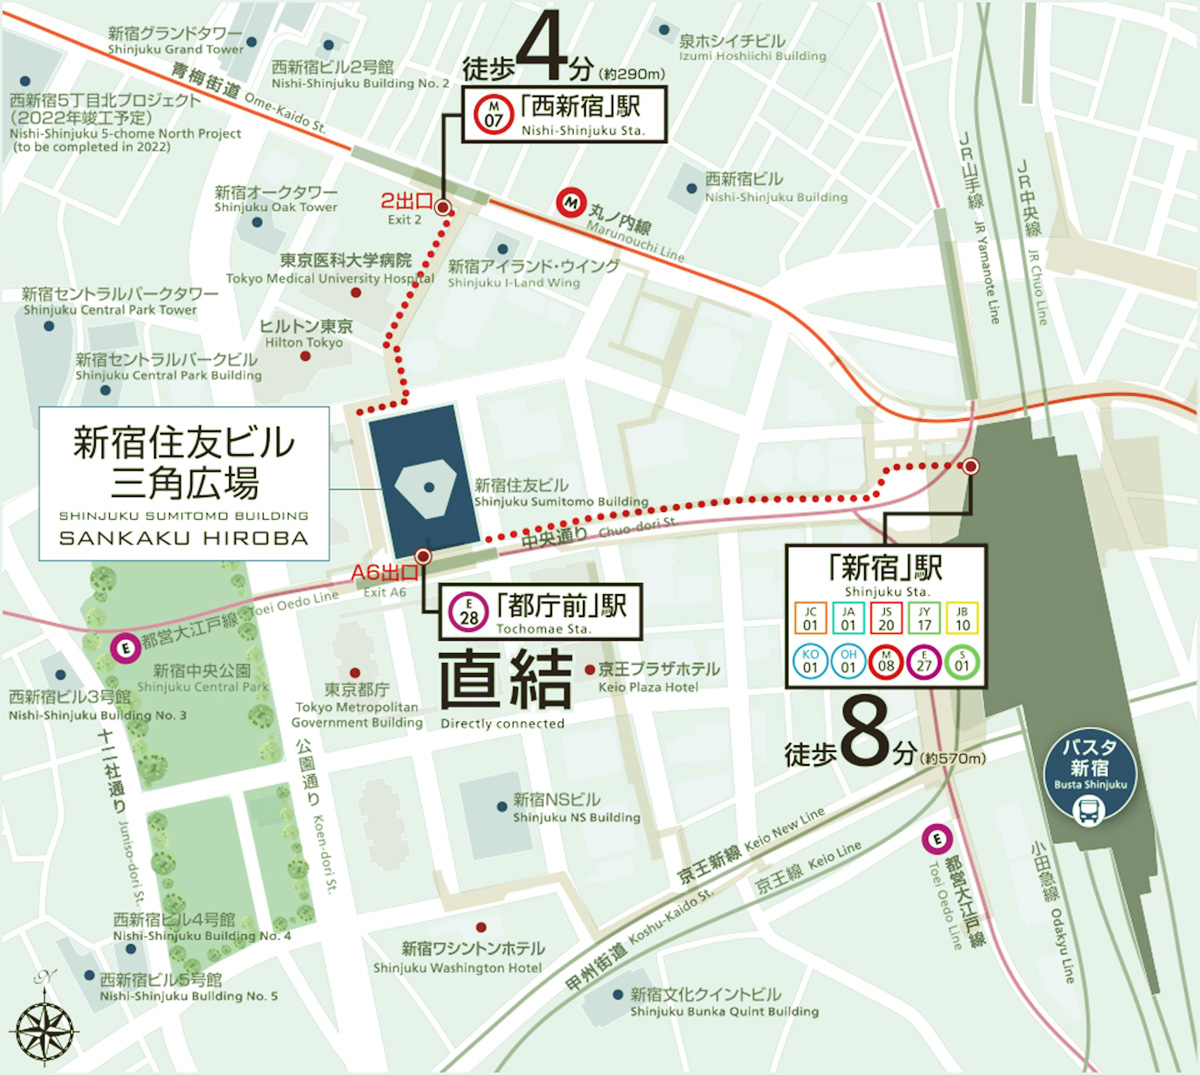 Shinjuku Sumitomo Building, SANKAKU HIROBA MAP